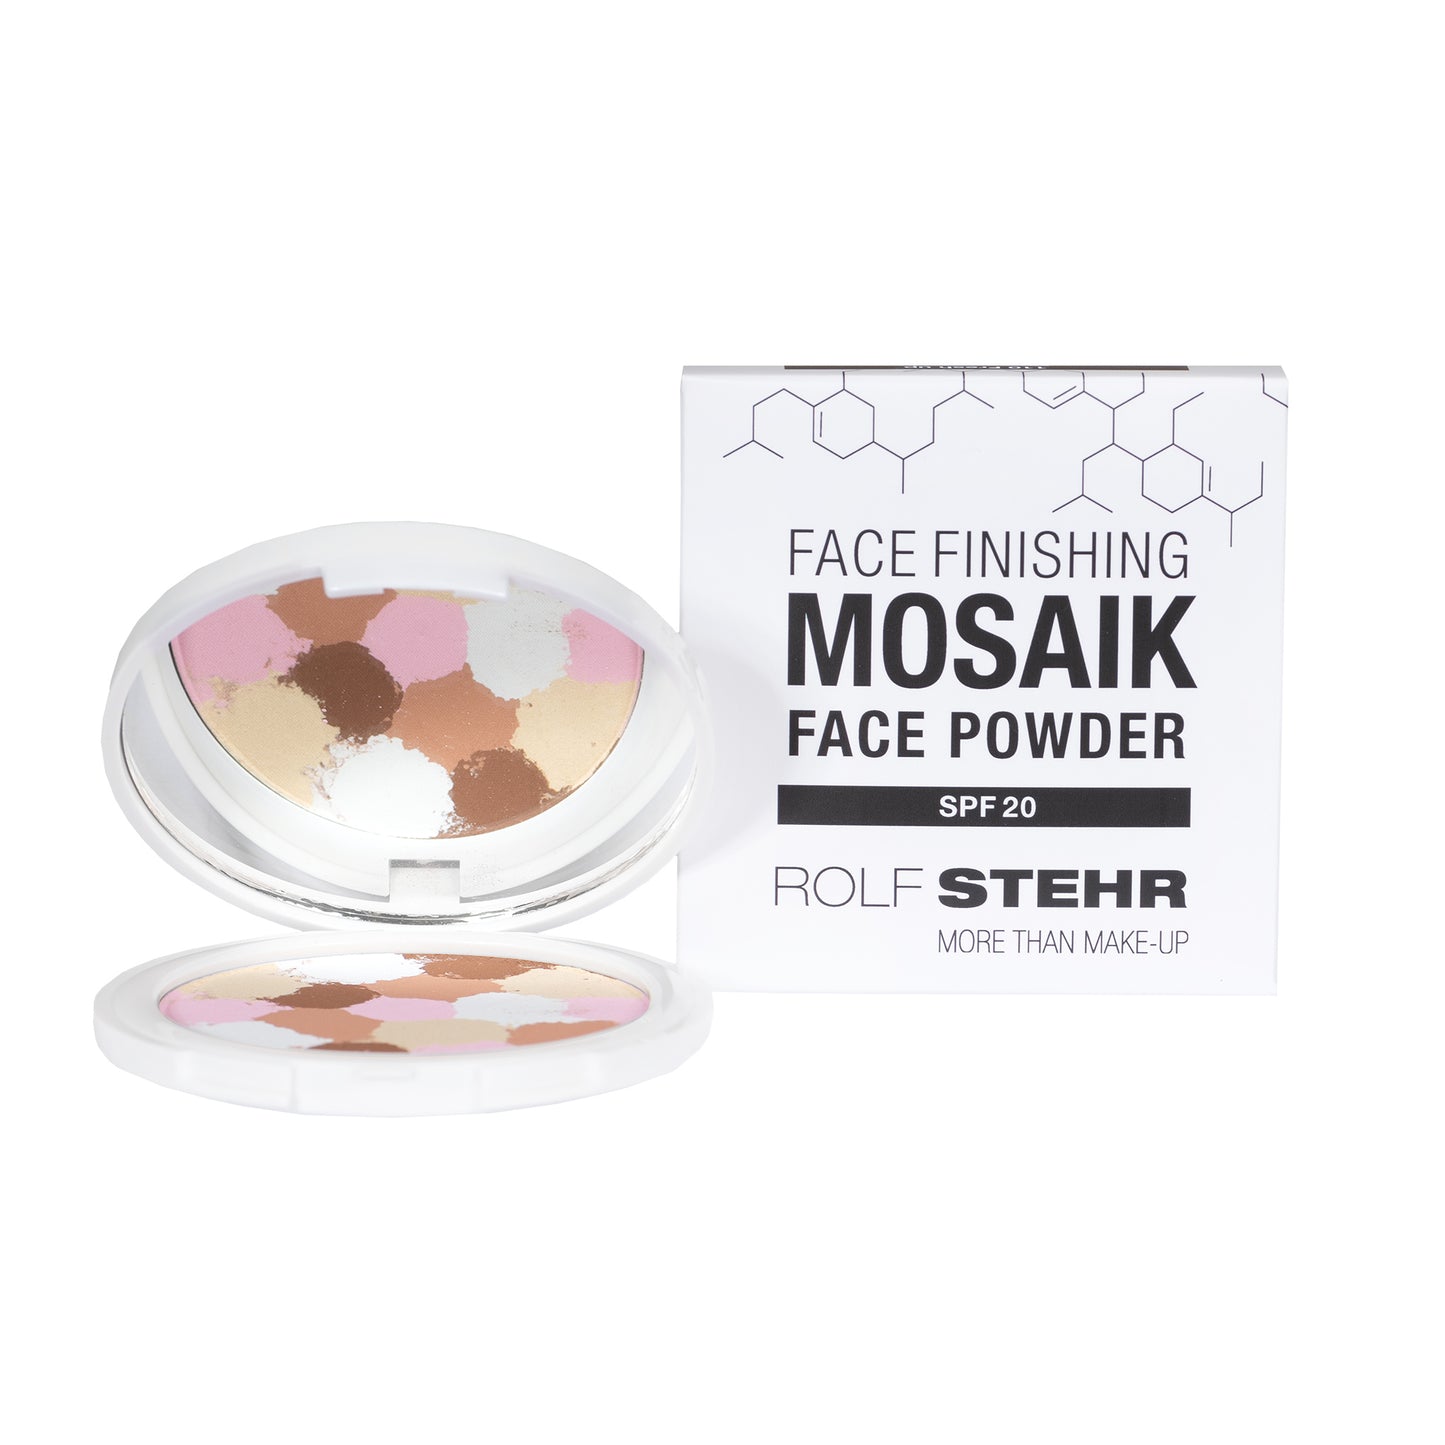 Mosaik Face Powder <br> More than Make up